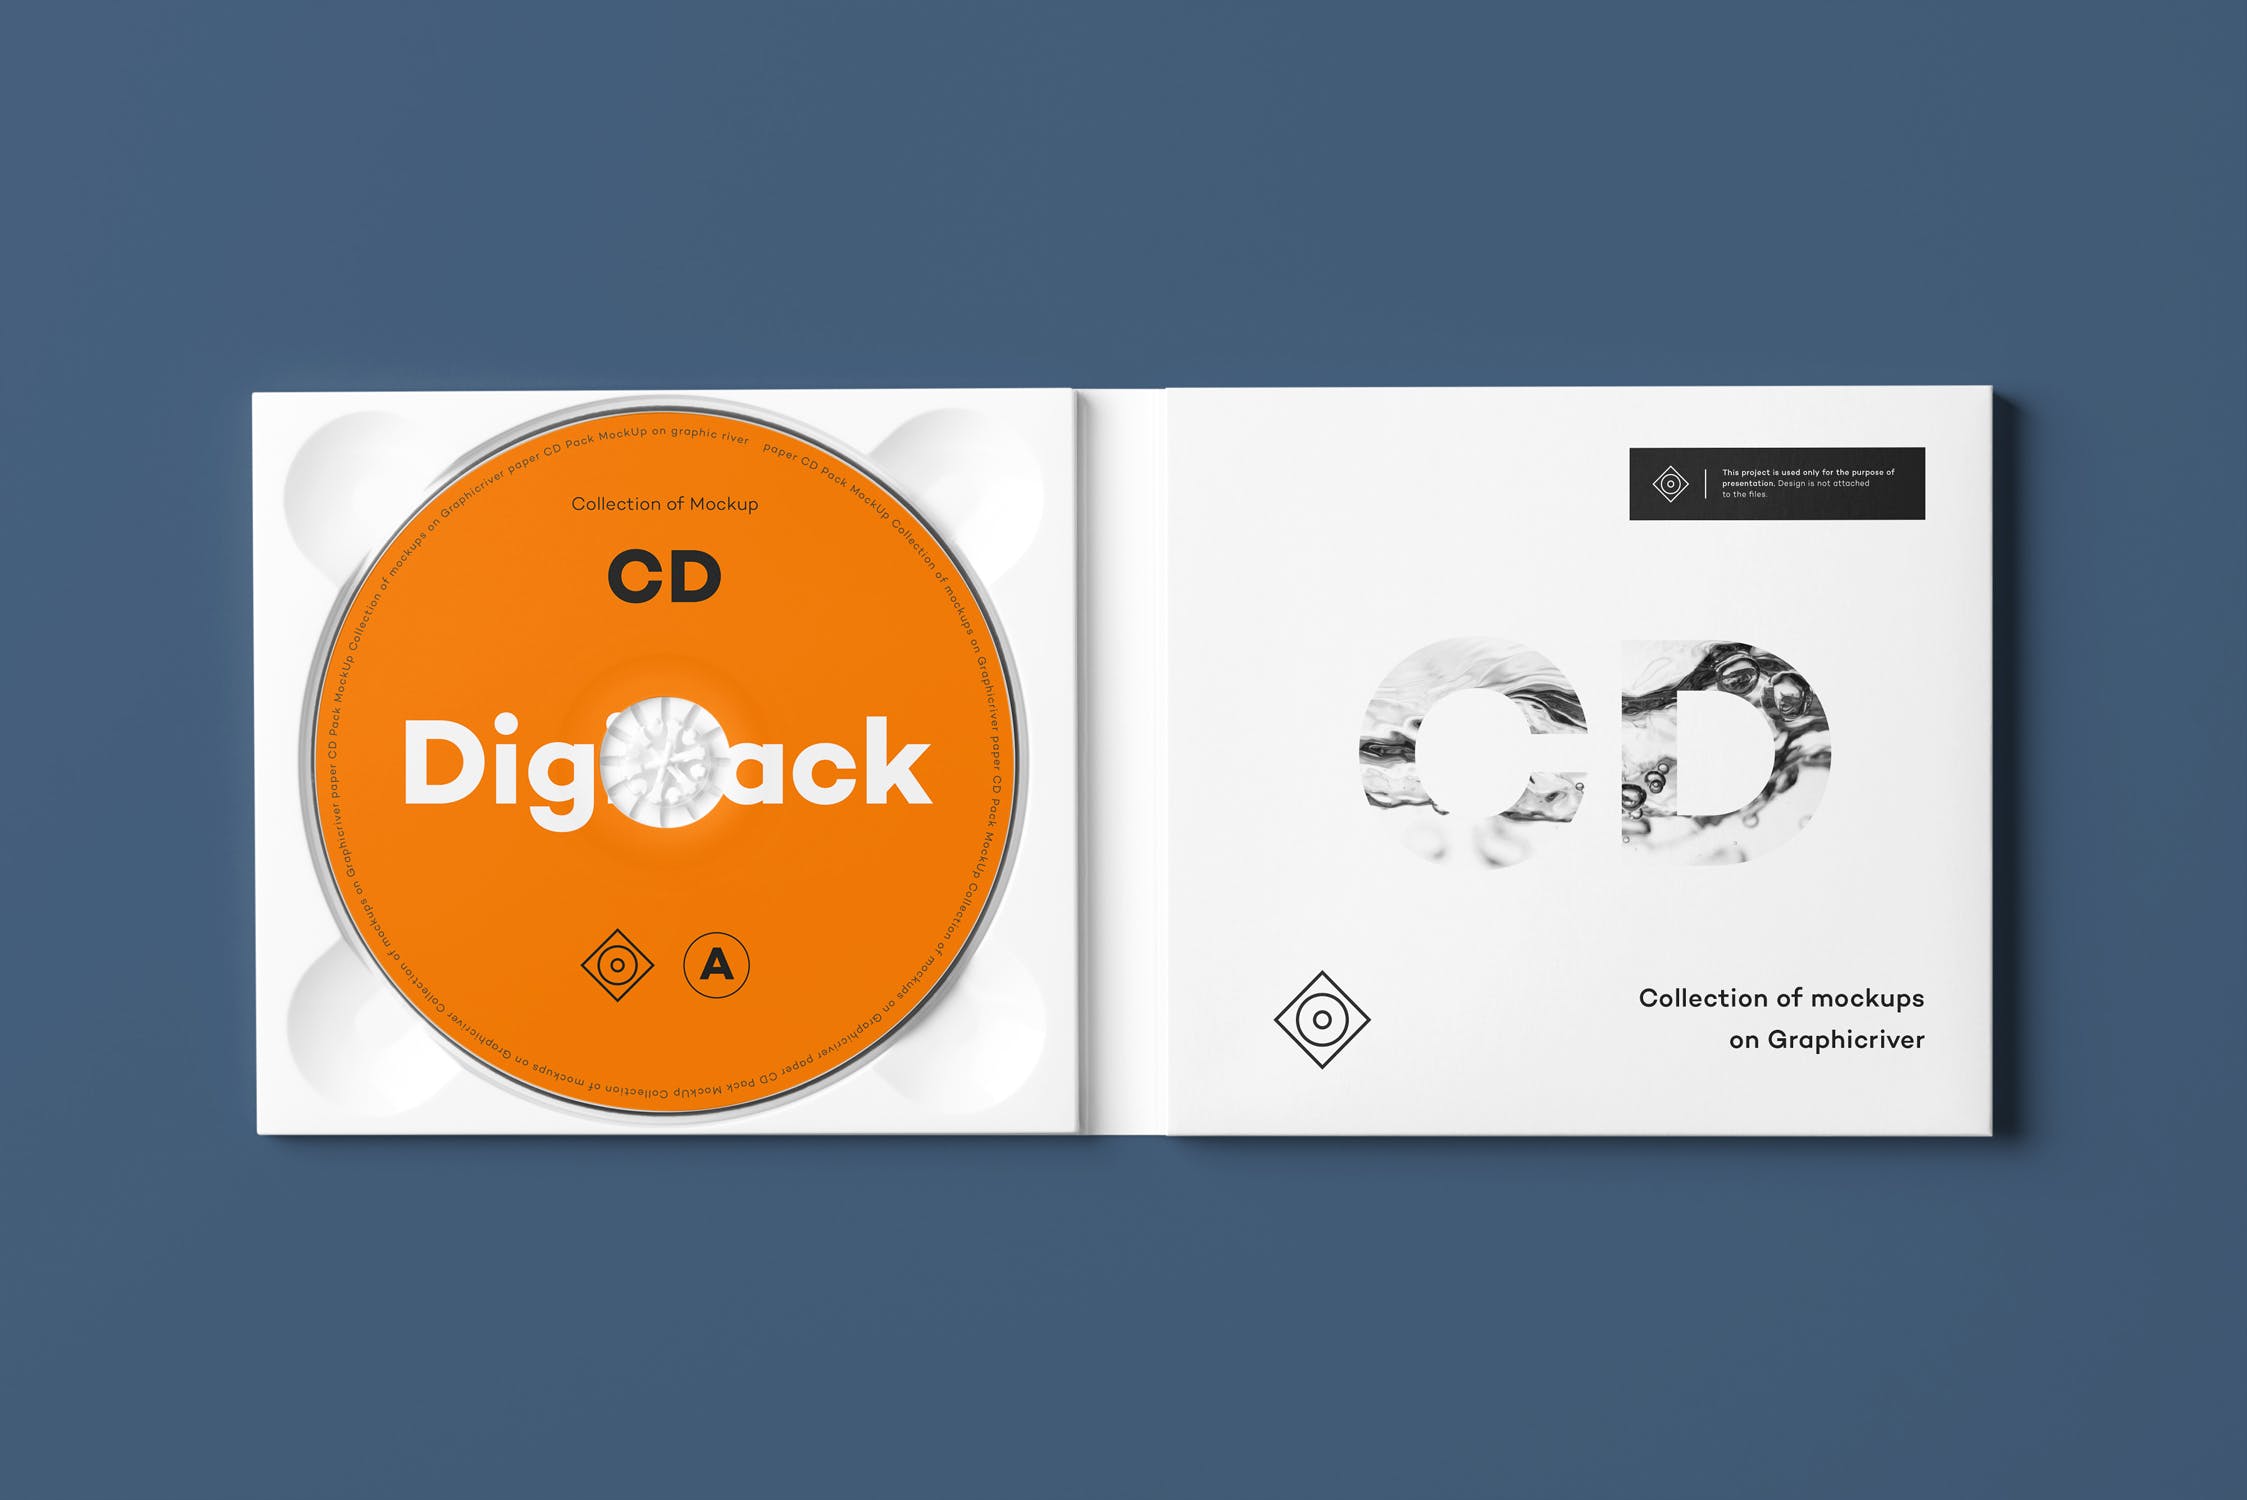 CD光碟封面&包装盒设计图第一素材精选模板v8 CD Digi Pack Mock-up 8插图(1)